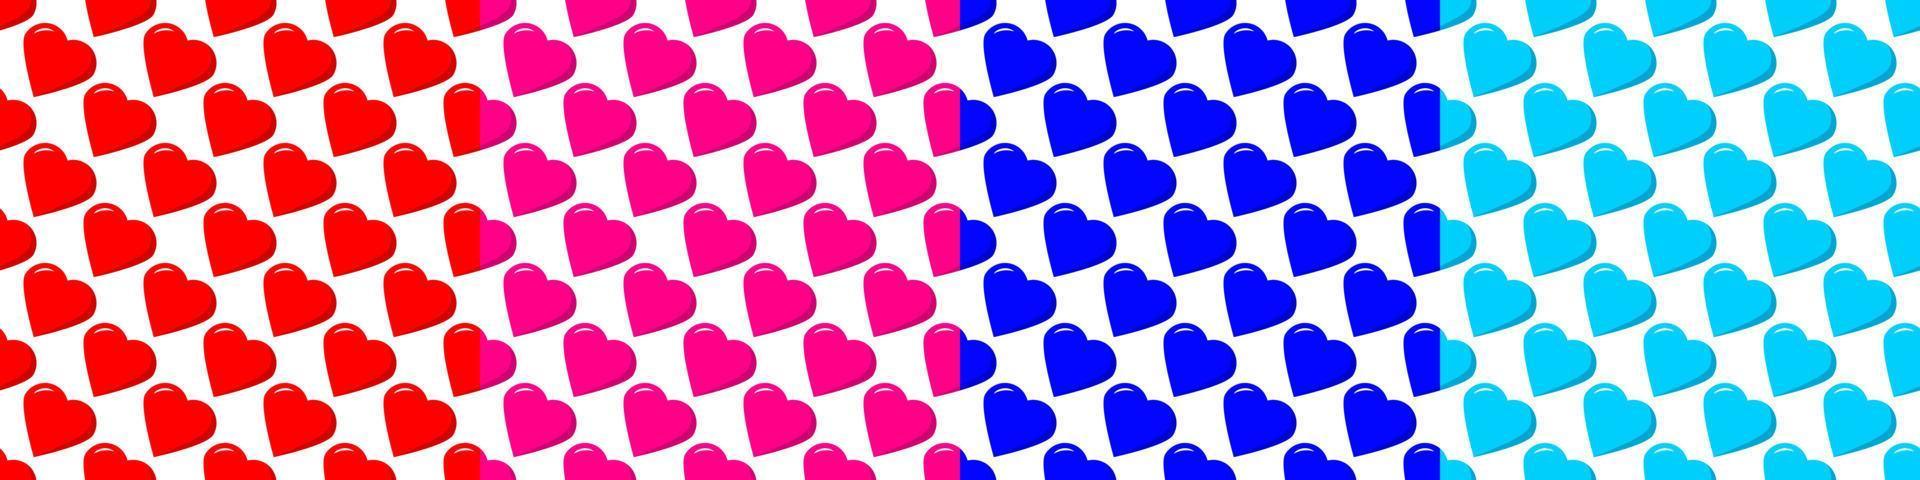 Reihe von nahtlosen Mustern aus gestaffelten Herzen rot, rosa, blau auf weißem Hintergrund. vektor